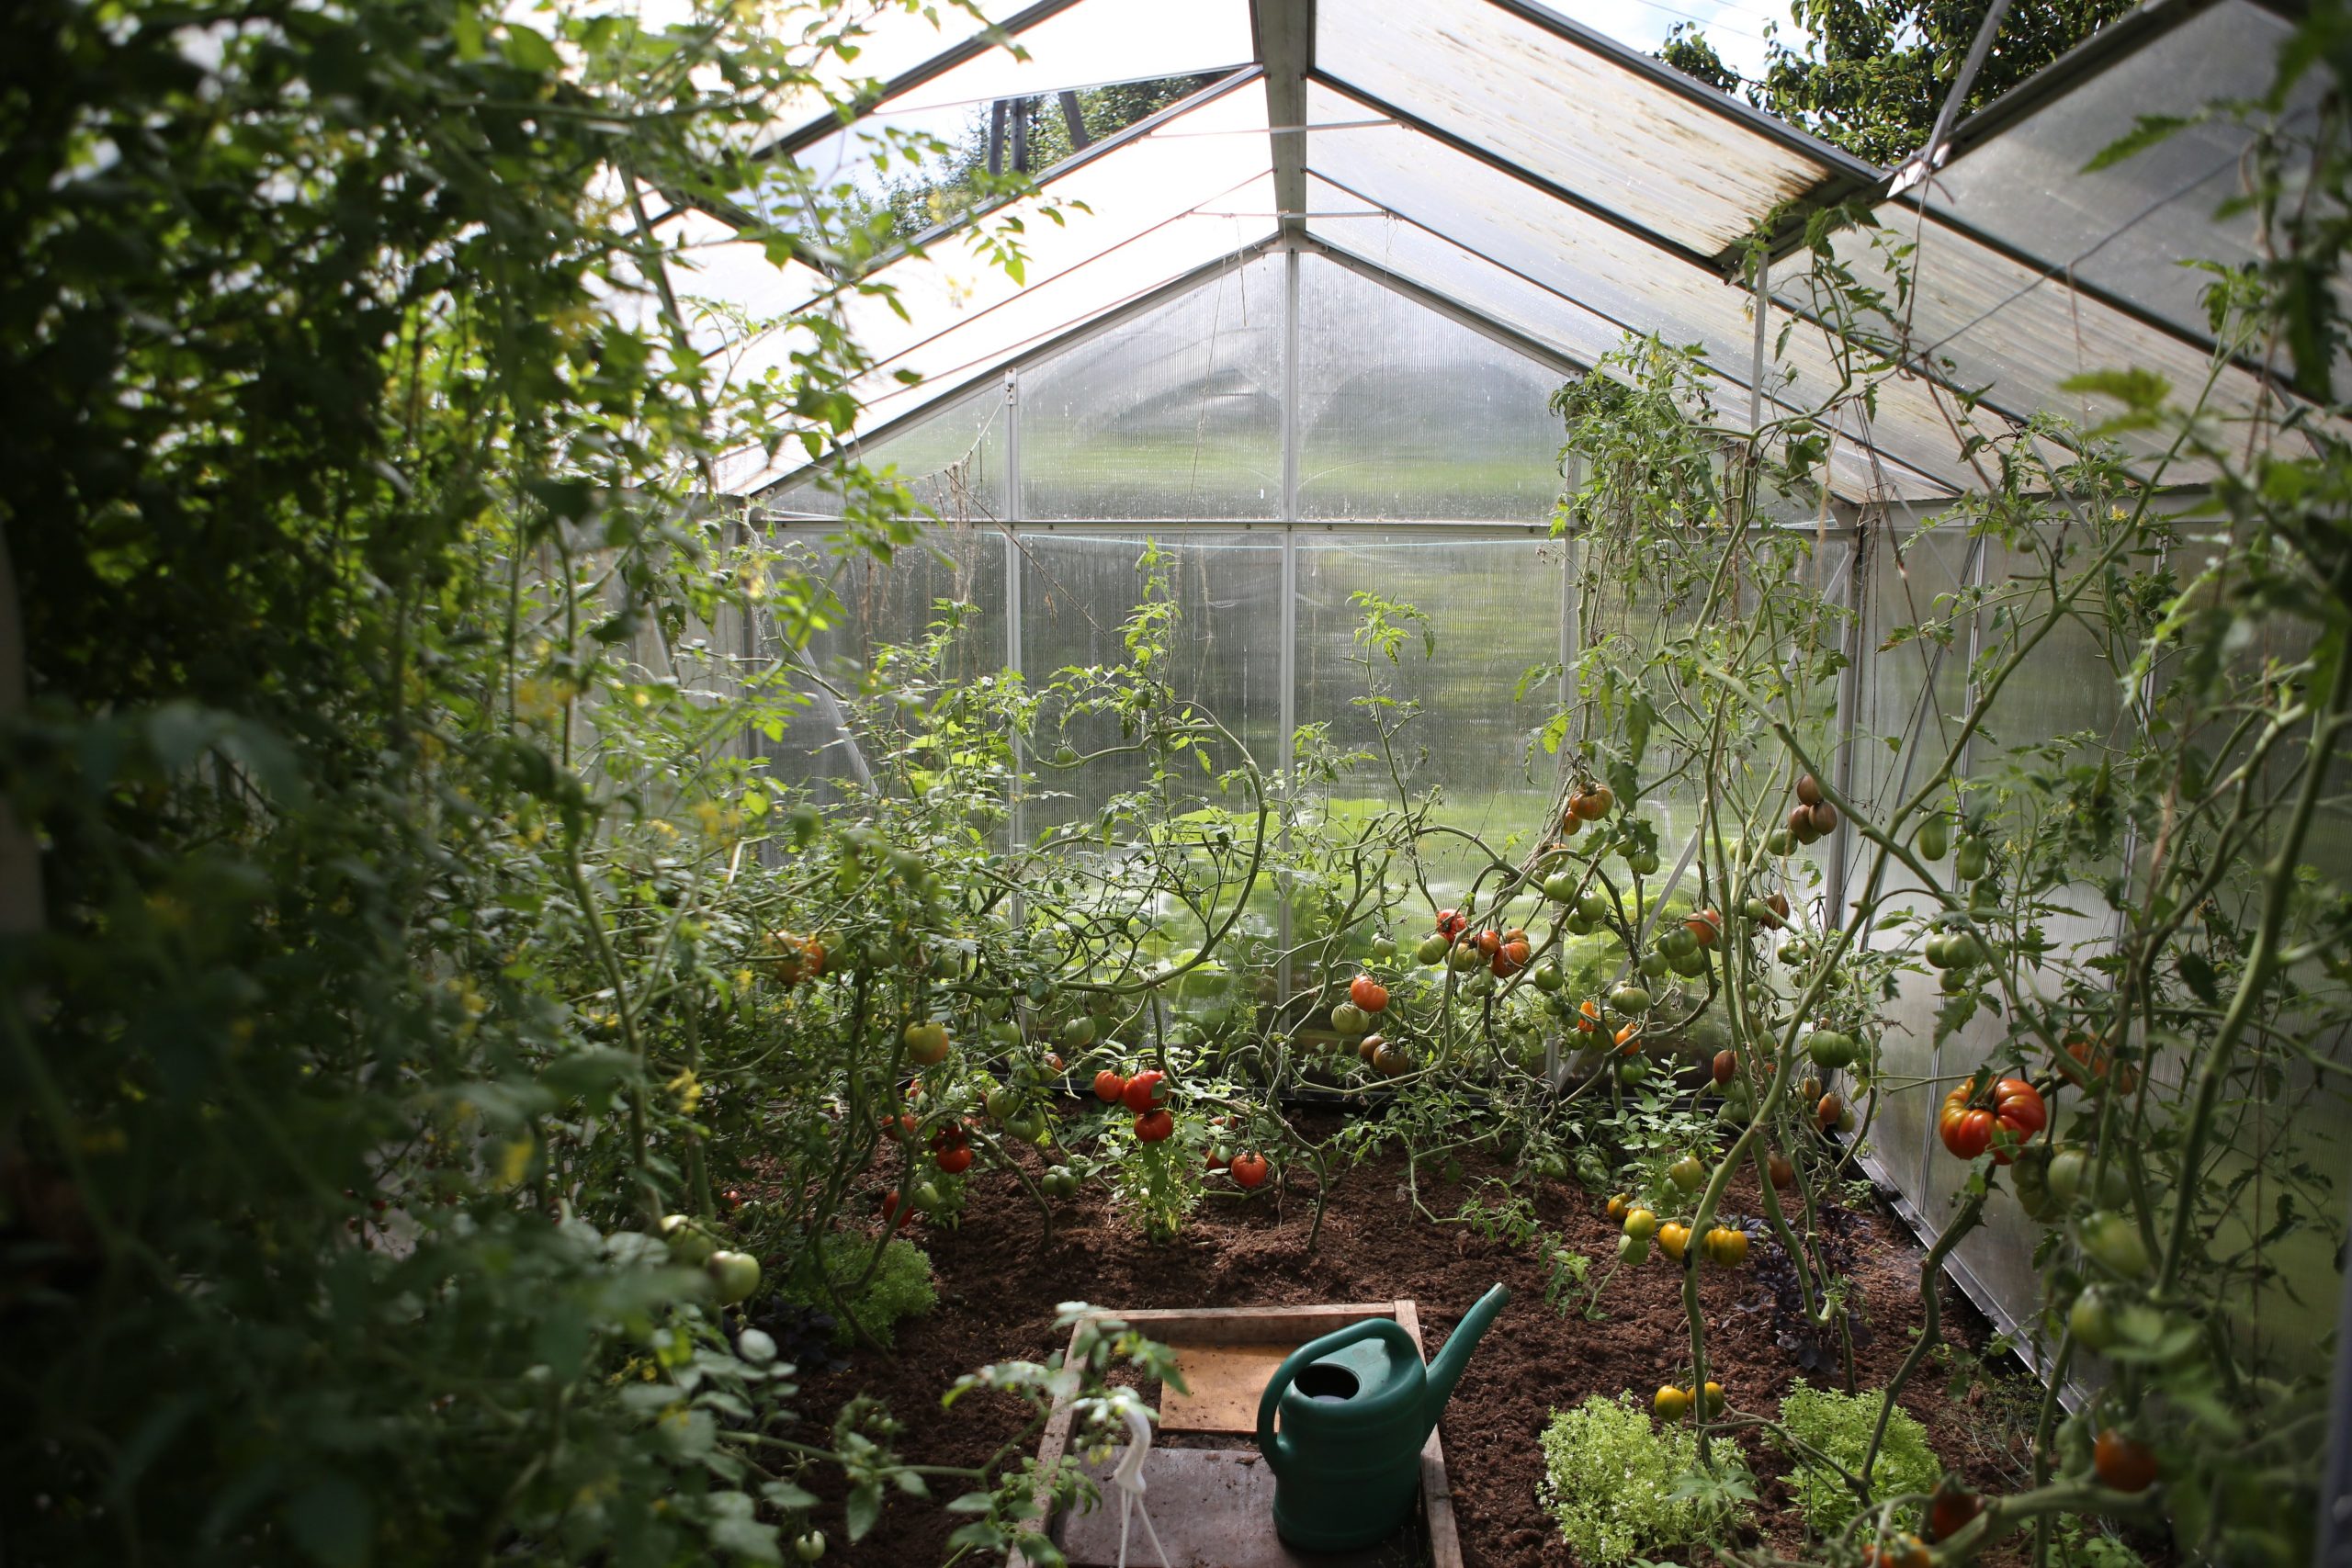 क्या आप भी उगाते हैं घर के गार्डन में सब्जियां? इस तरह करें खास देखभाल